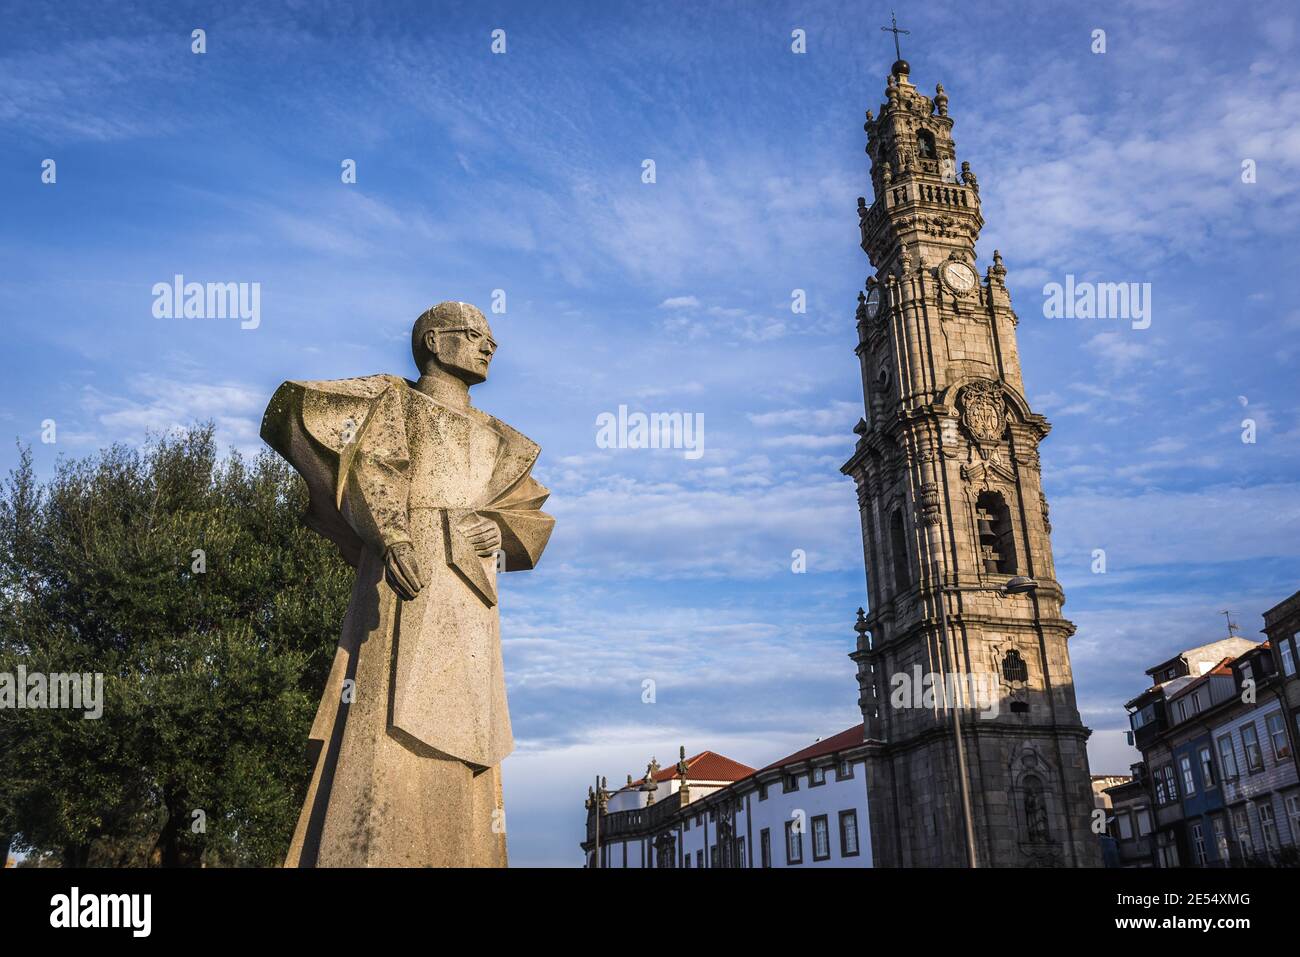 Statue of Portuguese bishop Antonio Ferreira Gomes in Vitoria civil parish of Porto city in Portugal. Clerigos Church tower on background Stock Photo